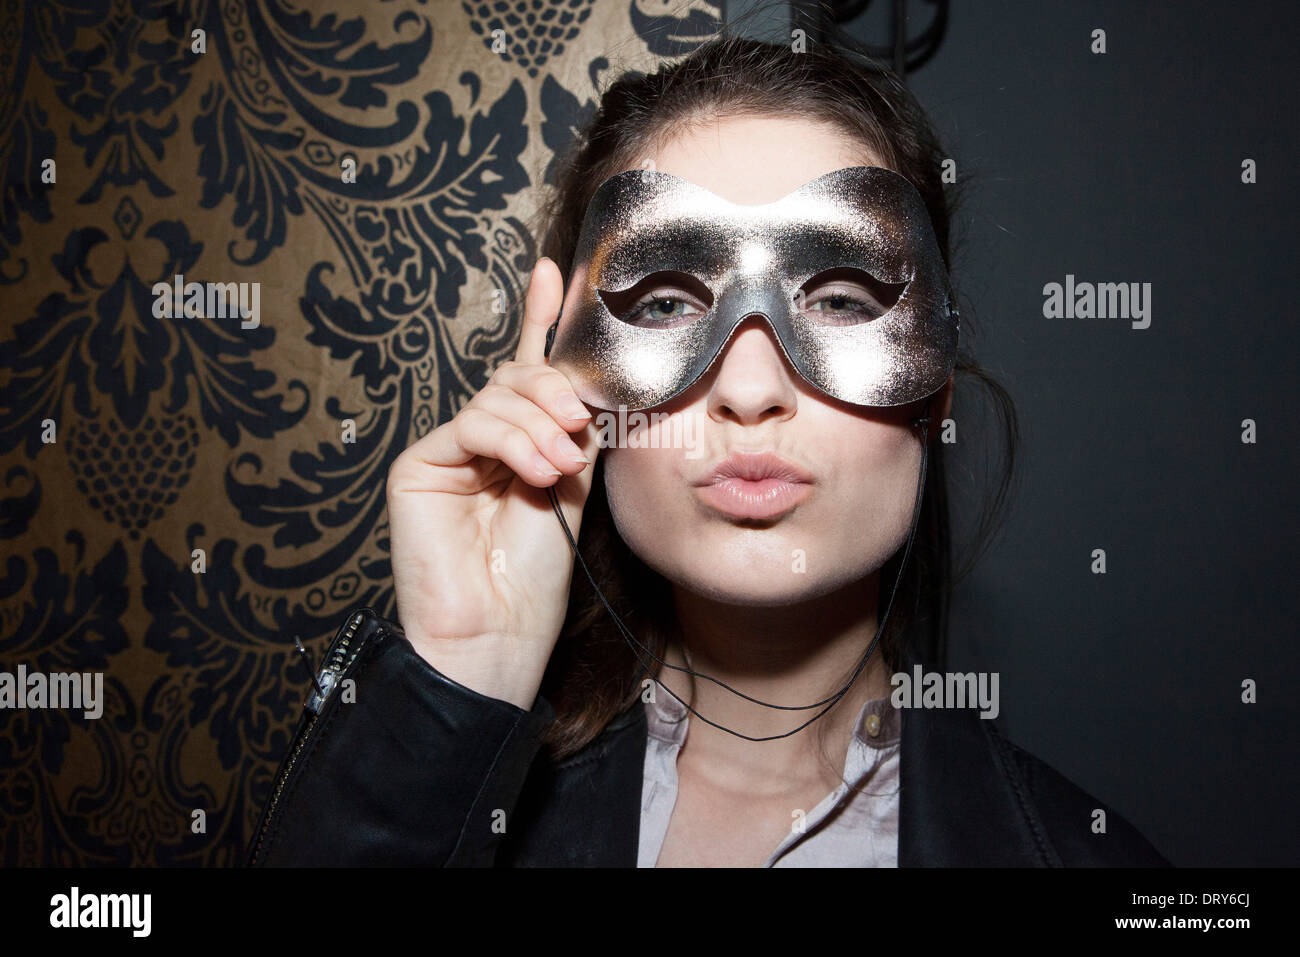 Donna che indossa la maschera di partito, esercitano le labbra, ritratto Foto Stock